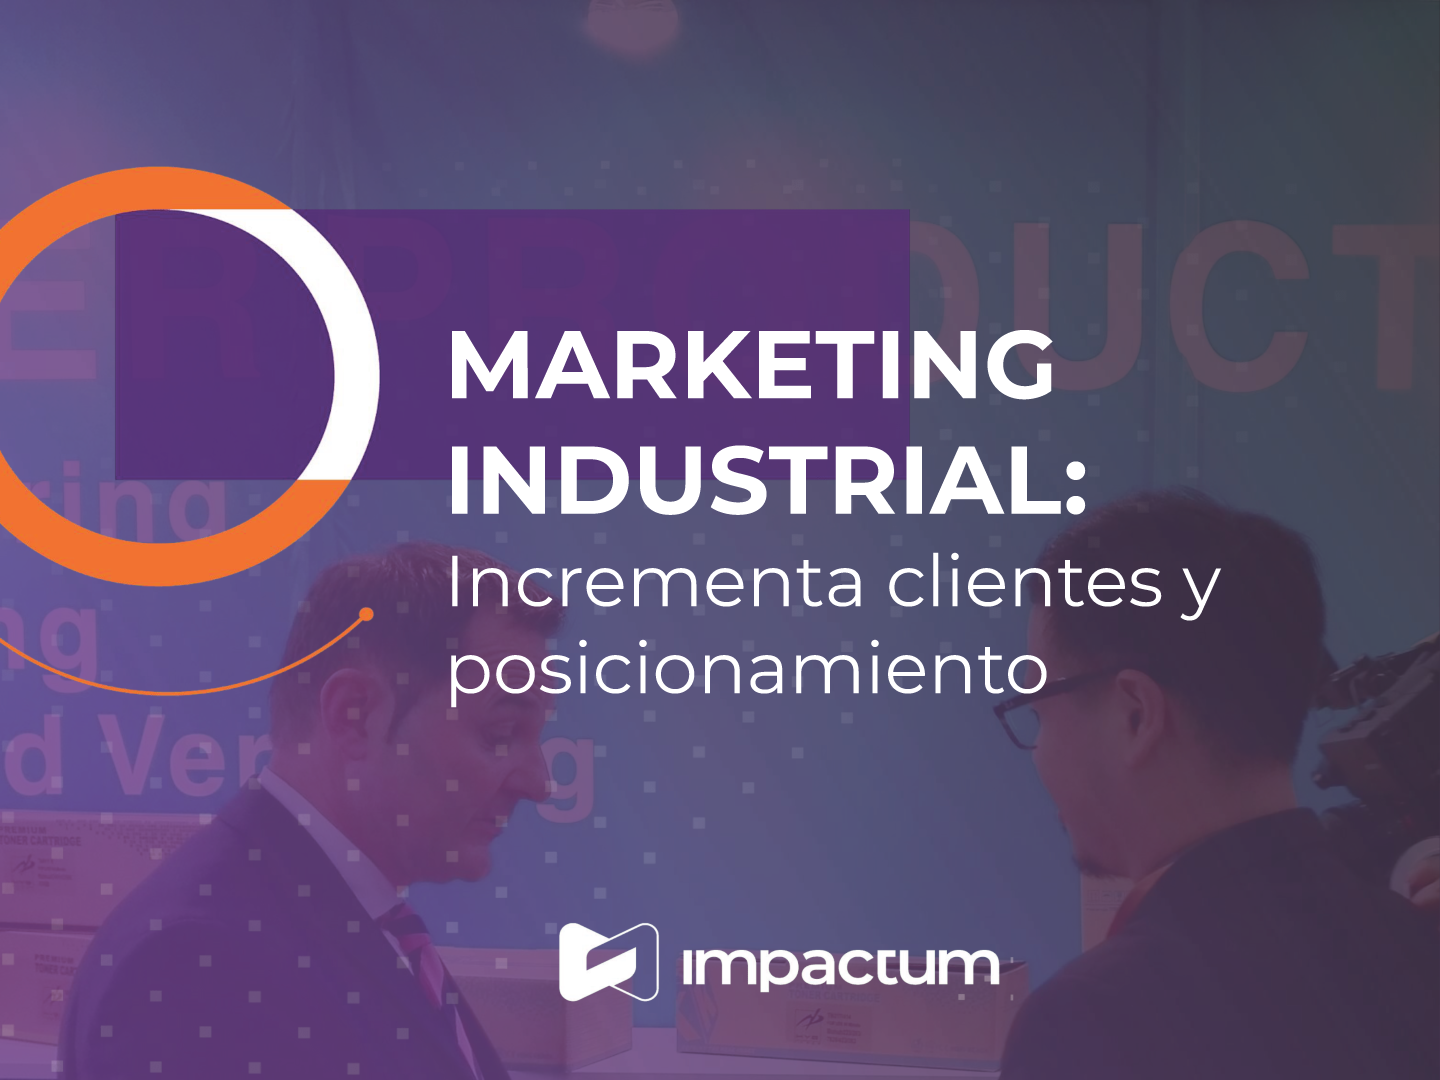 Marketing Industrial: Incrementa clientes y posicionamiento